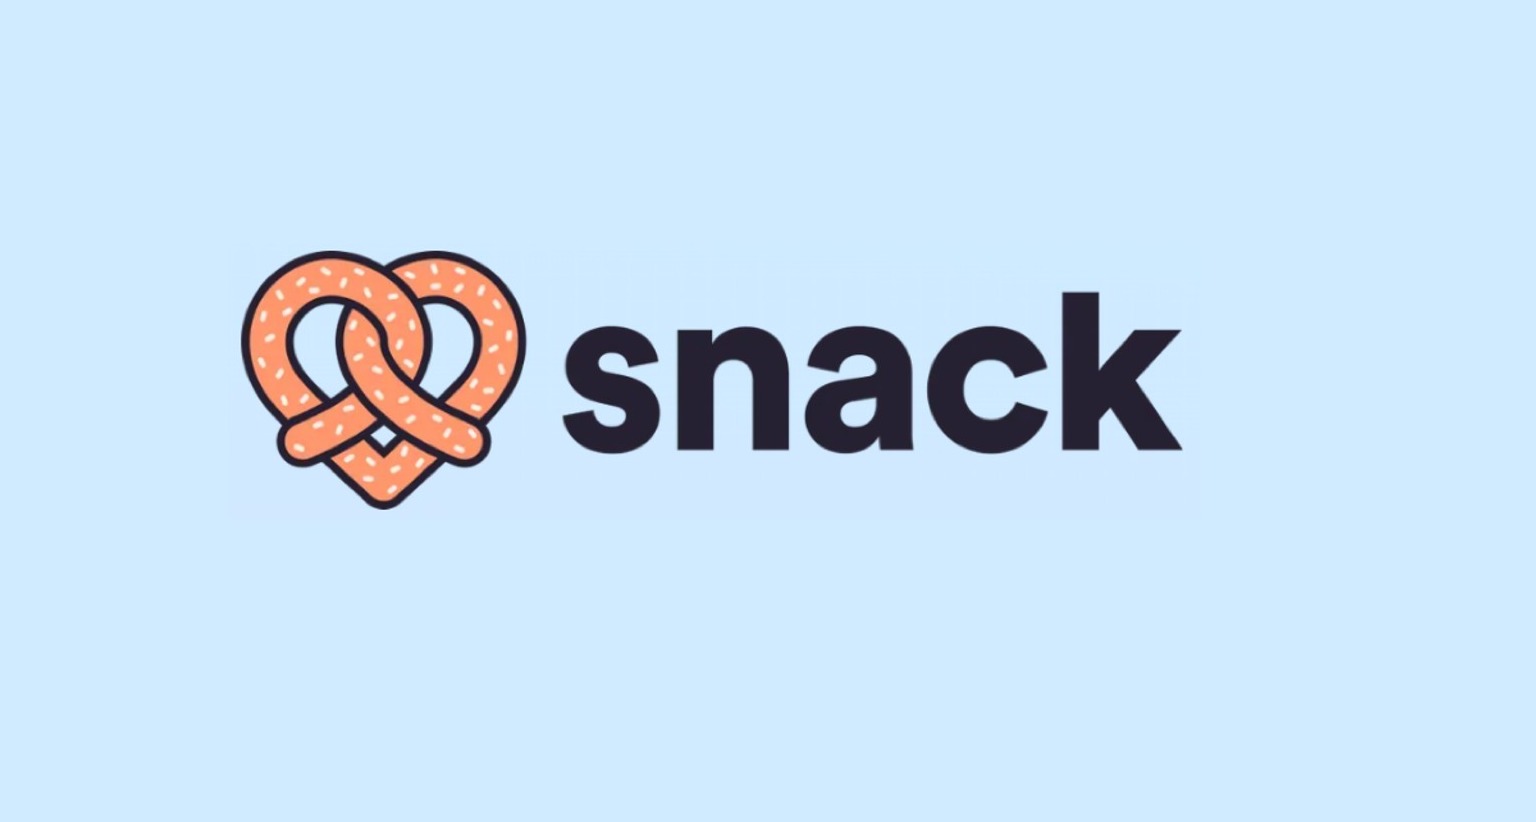 La aplicación de citas Snack permite relacionarse a través de avatares entrenados por IA